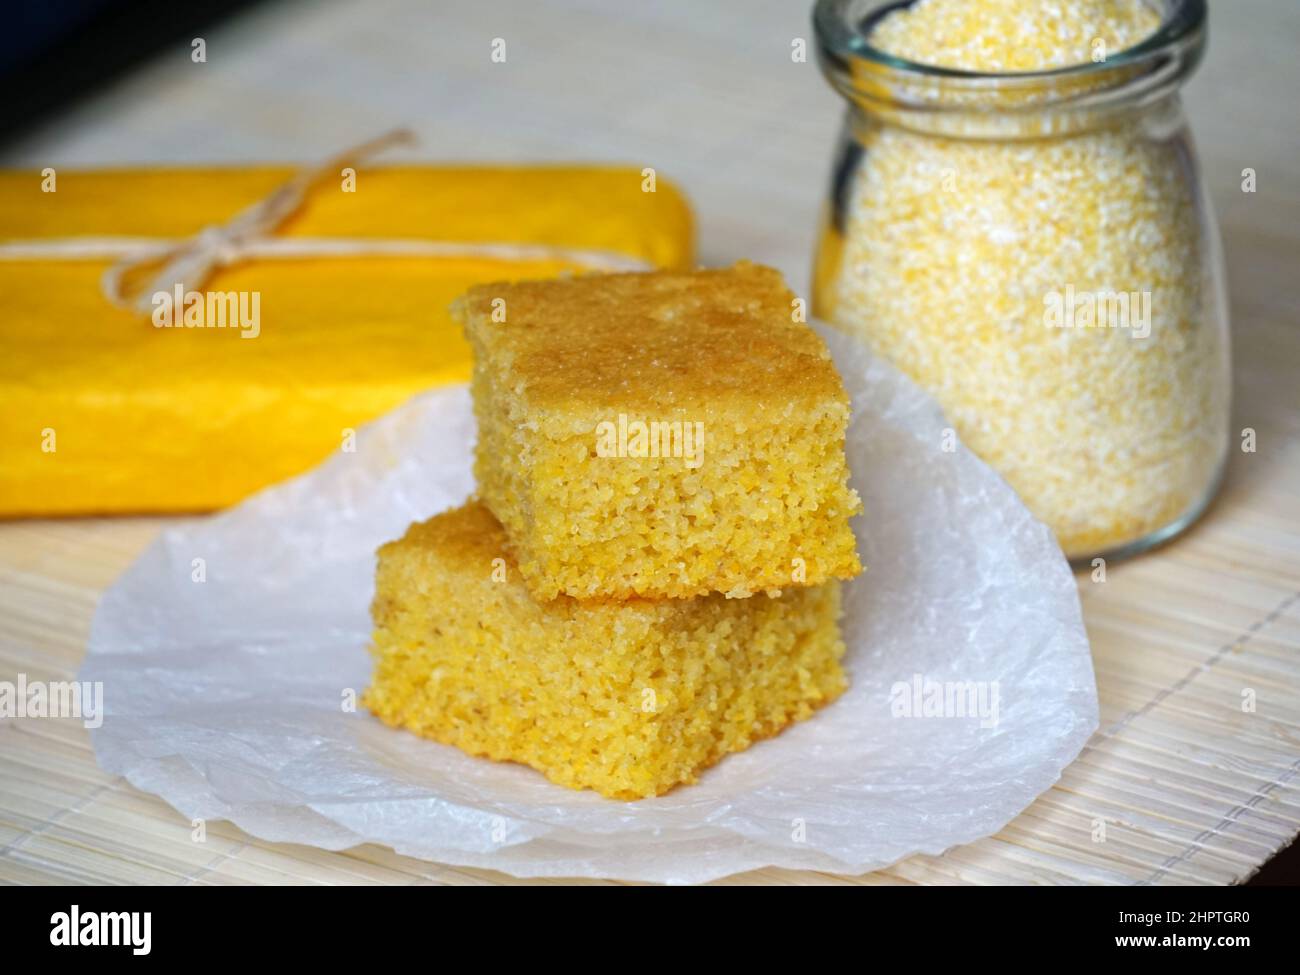 Un sabroso pastel casero sano hecho de maíz orgánico Foto de stock